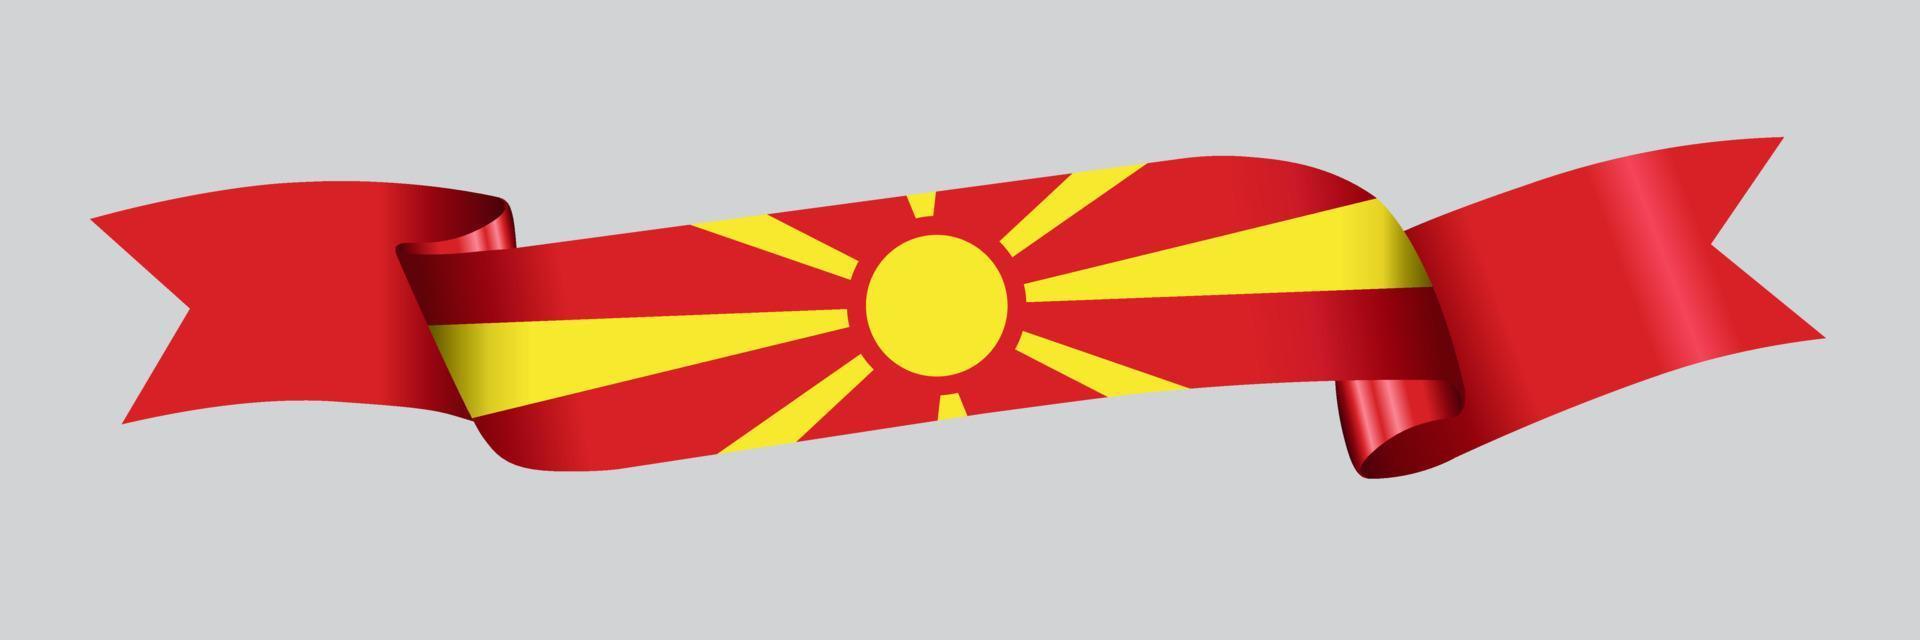 Bandeira 3D da Macedônia do Norte na faixa de opções. vetor